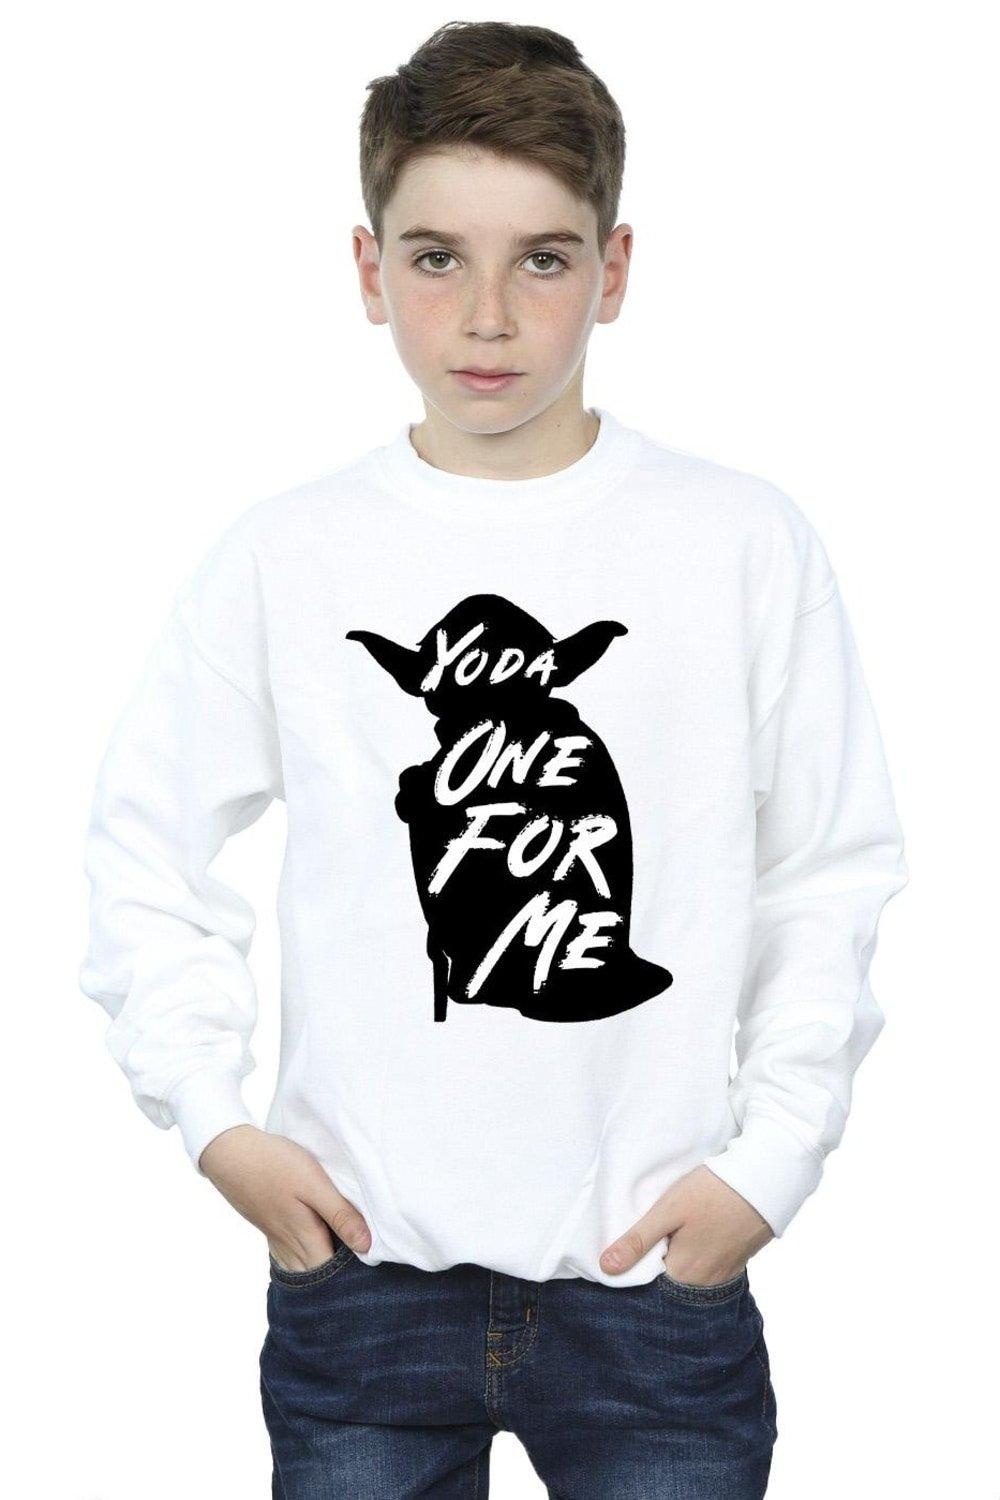 Yoda One For Me Sweatshirt